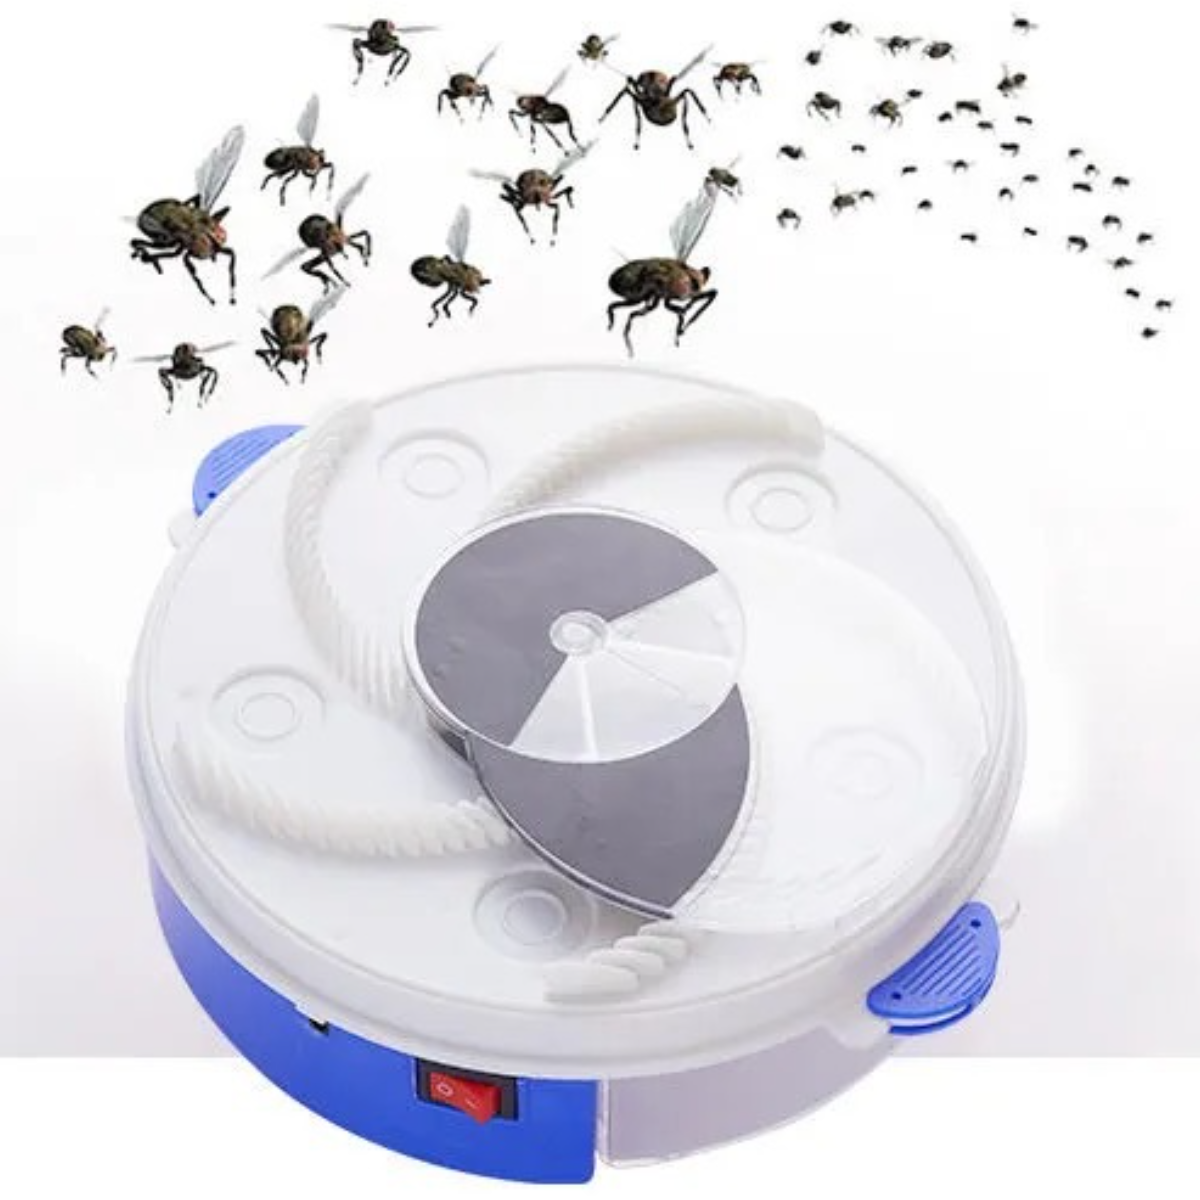 UWOT USB-Vollautomatik-Fliegenfalle-Weiß: Leise und energiesparende Drehfalle Insektenvernichter